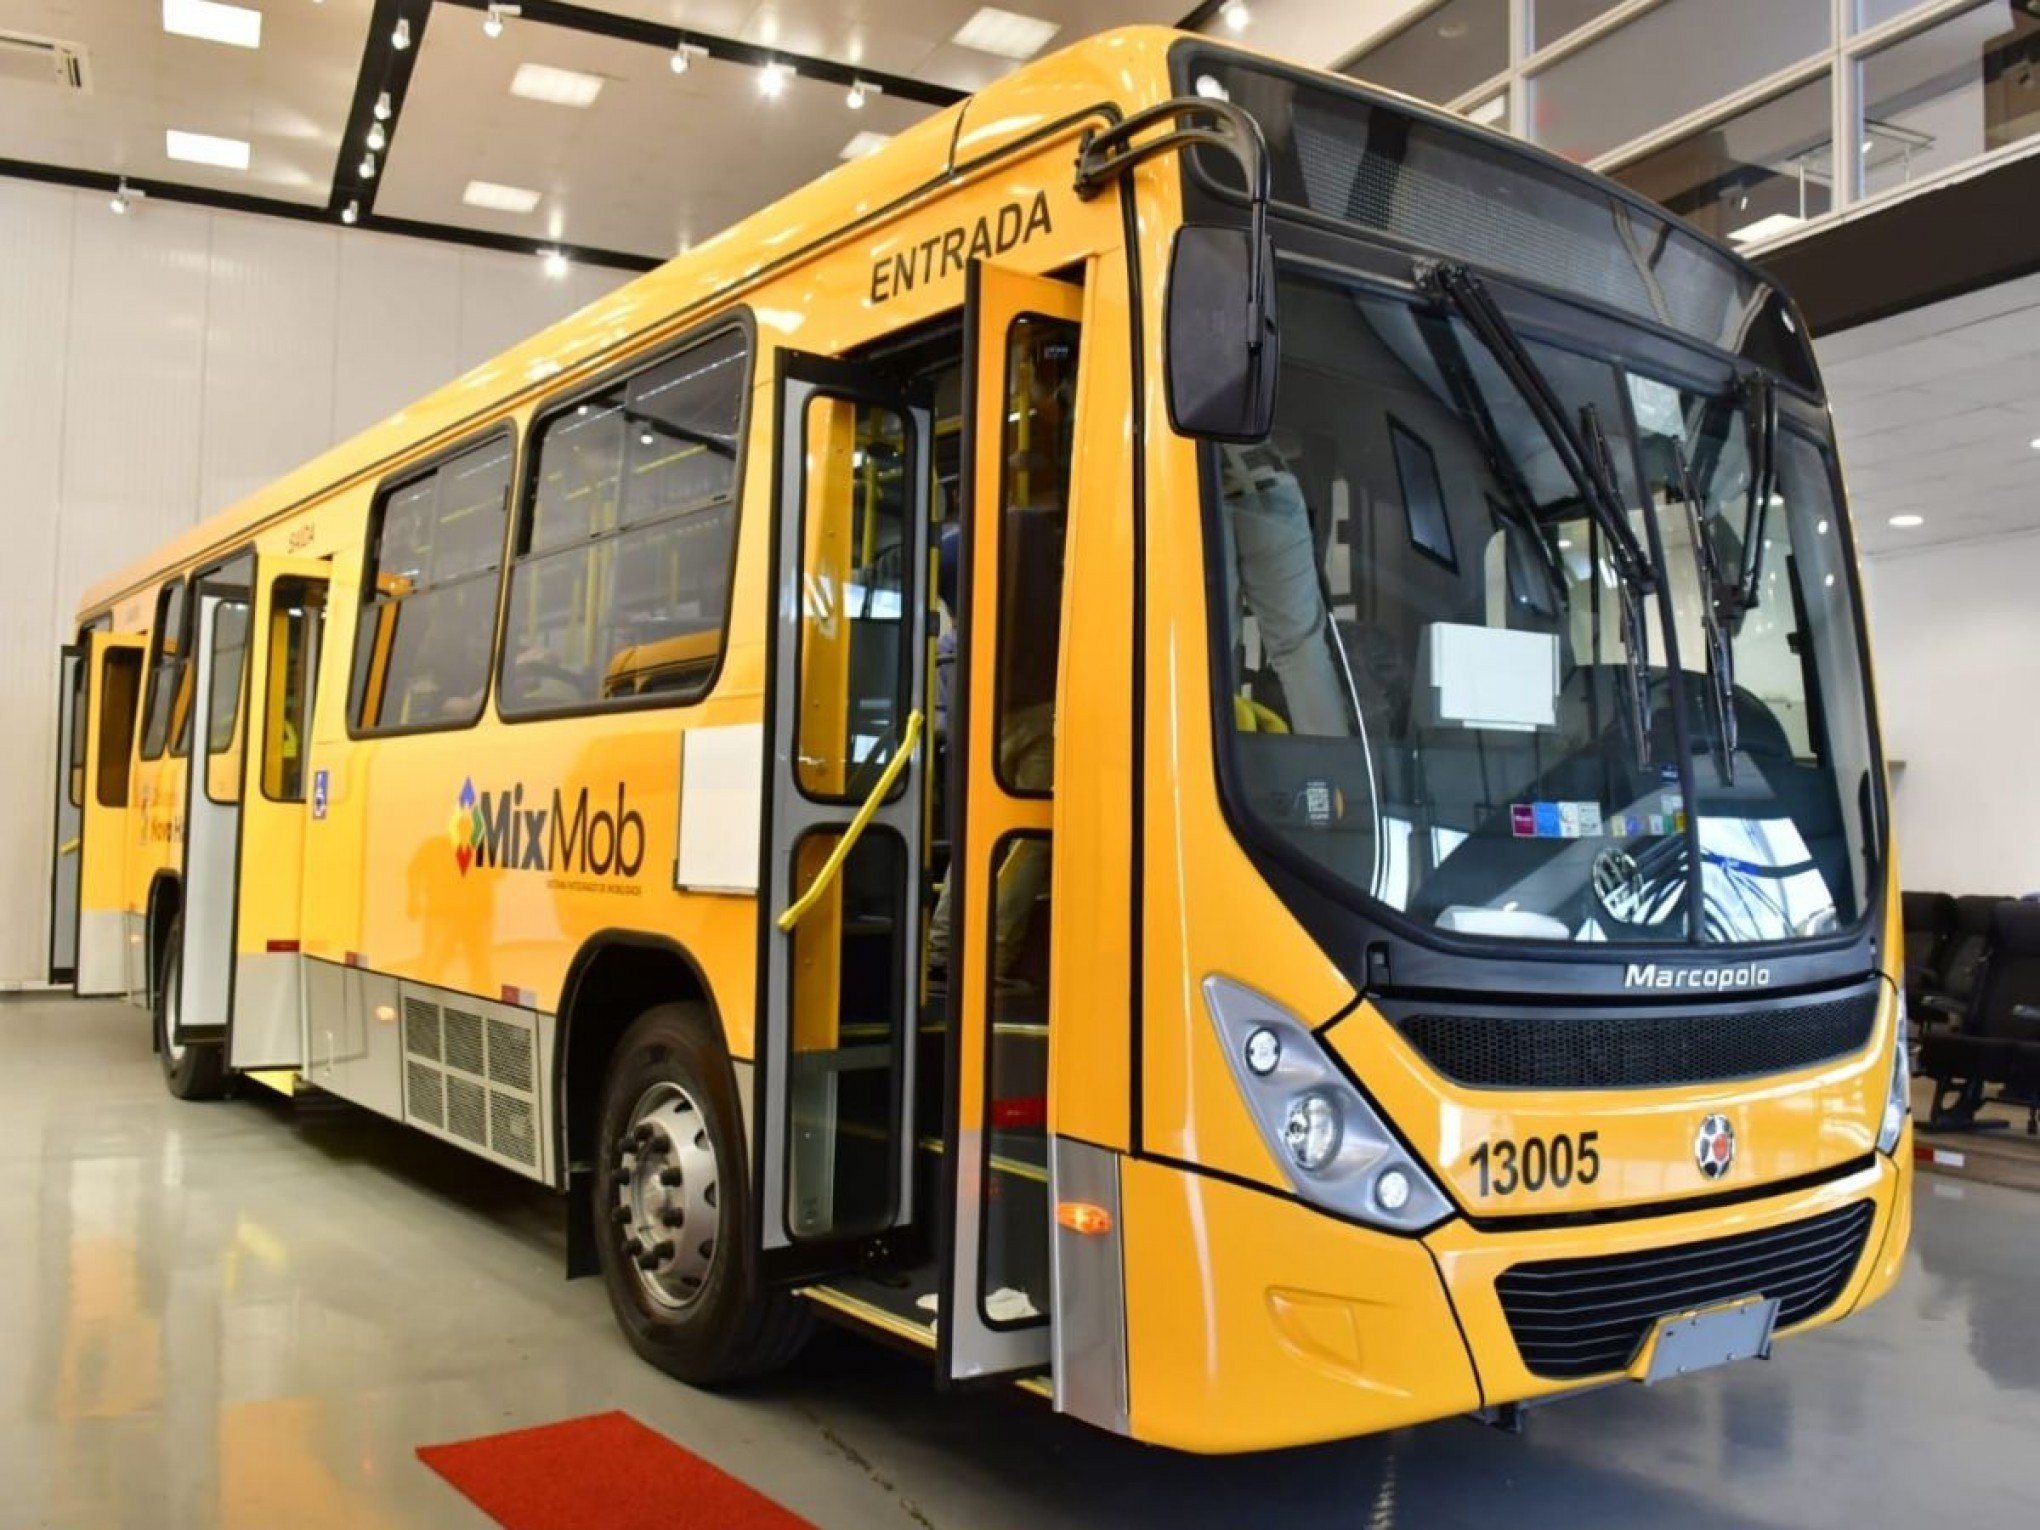 FOTOS: Conheça a nova frota de ônibus que fará o transporte público de Novo Hamburgo em breve